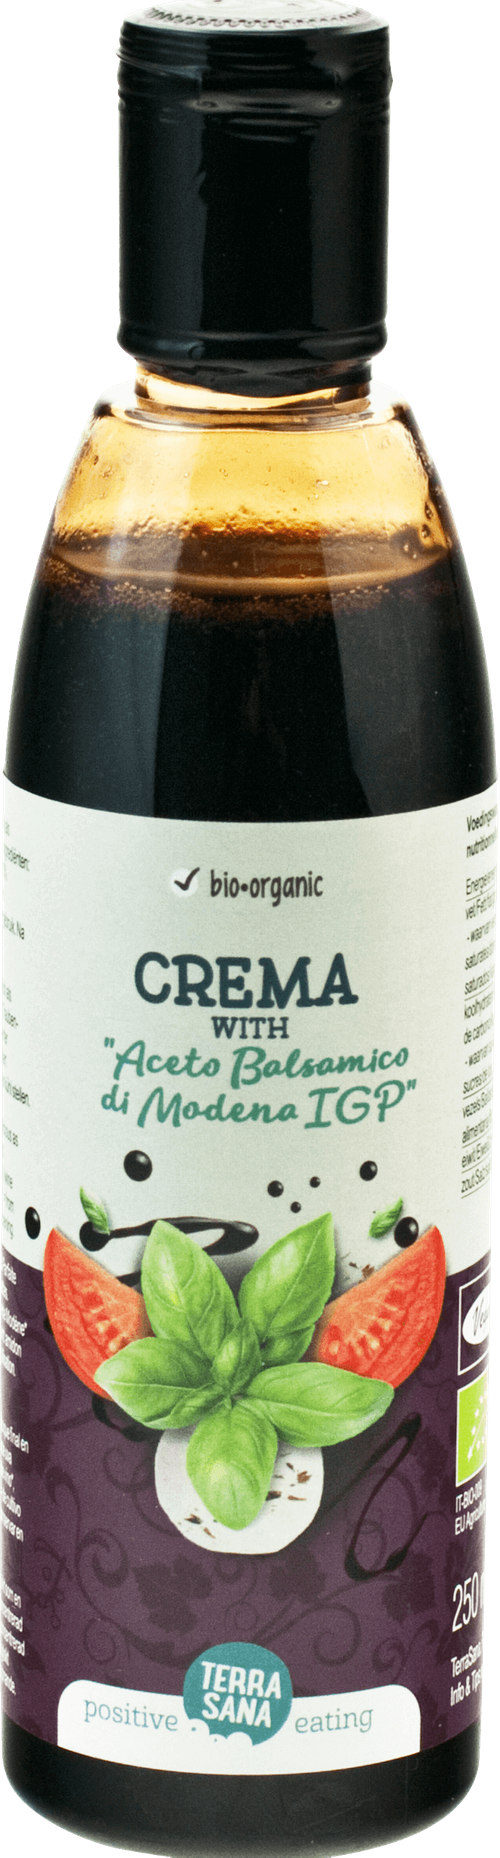 Crème balsamique - Cuisine méditerranéenne - Vinaigre balsamique